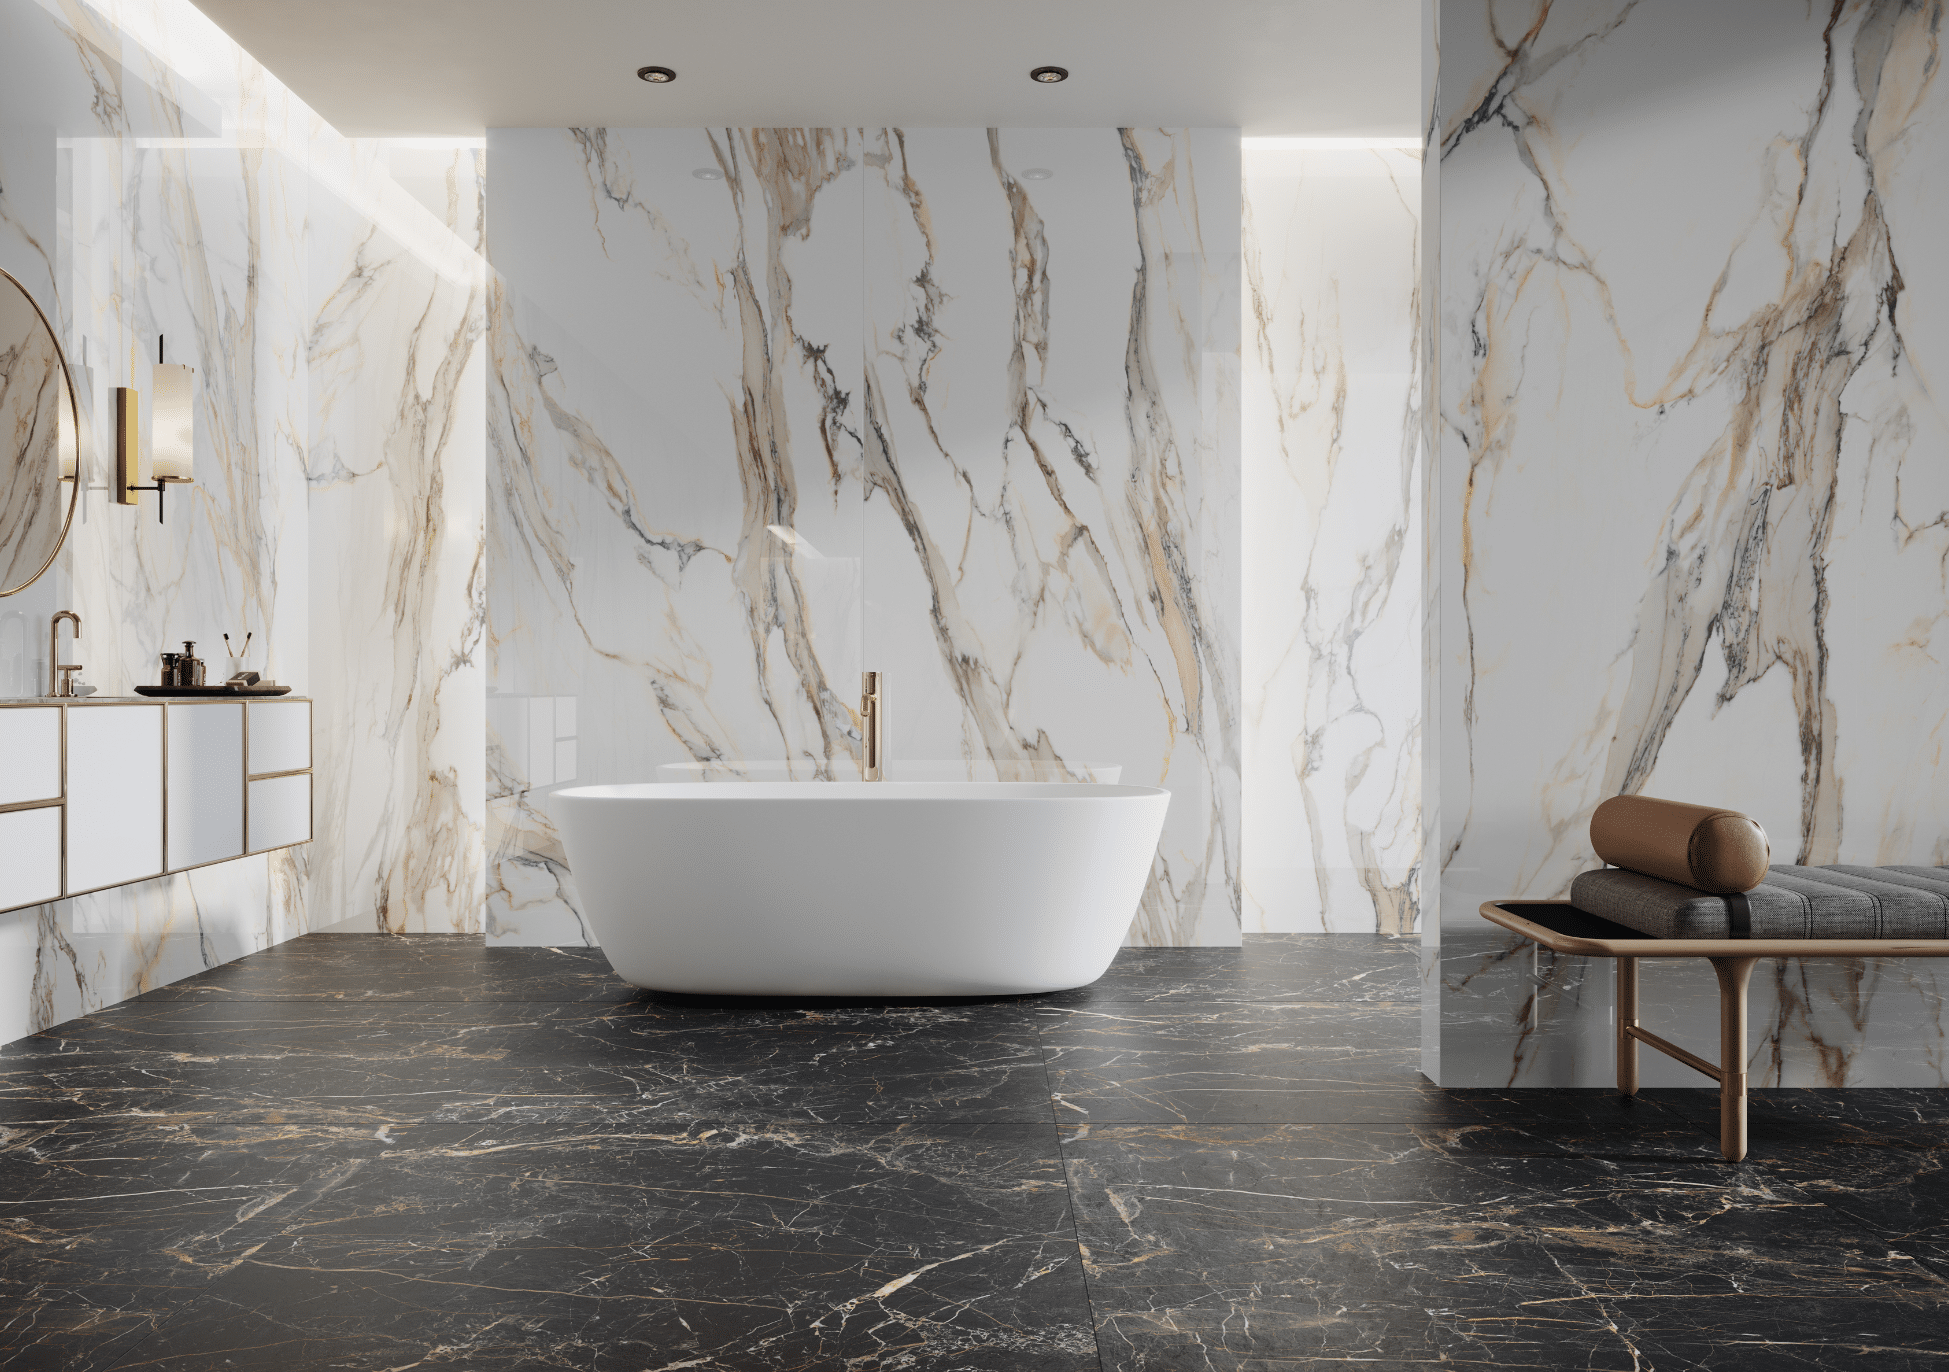 C. Bergmann zeigt ein edles Badezimmer mit marmorierten Fliesen an der Wand und Fliesenboden mit einer freistehenden Badewanne und goldenen Armaturen von Cerrad.